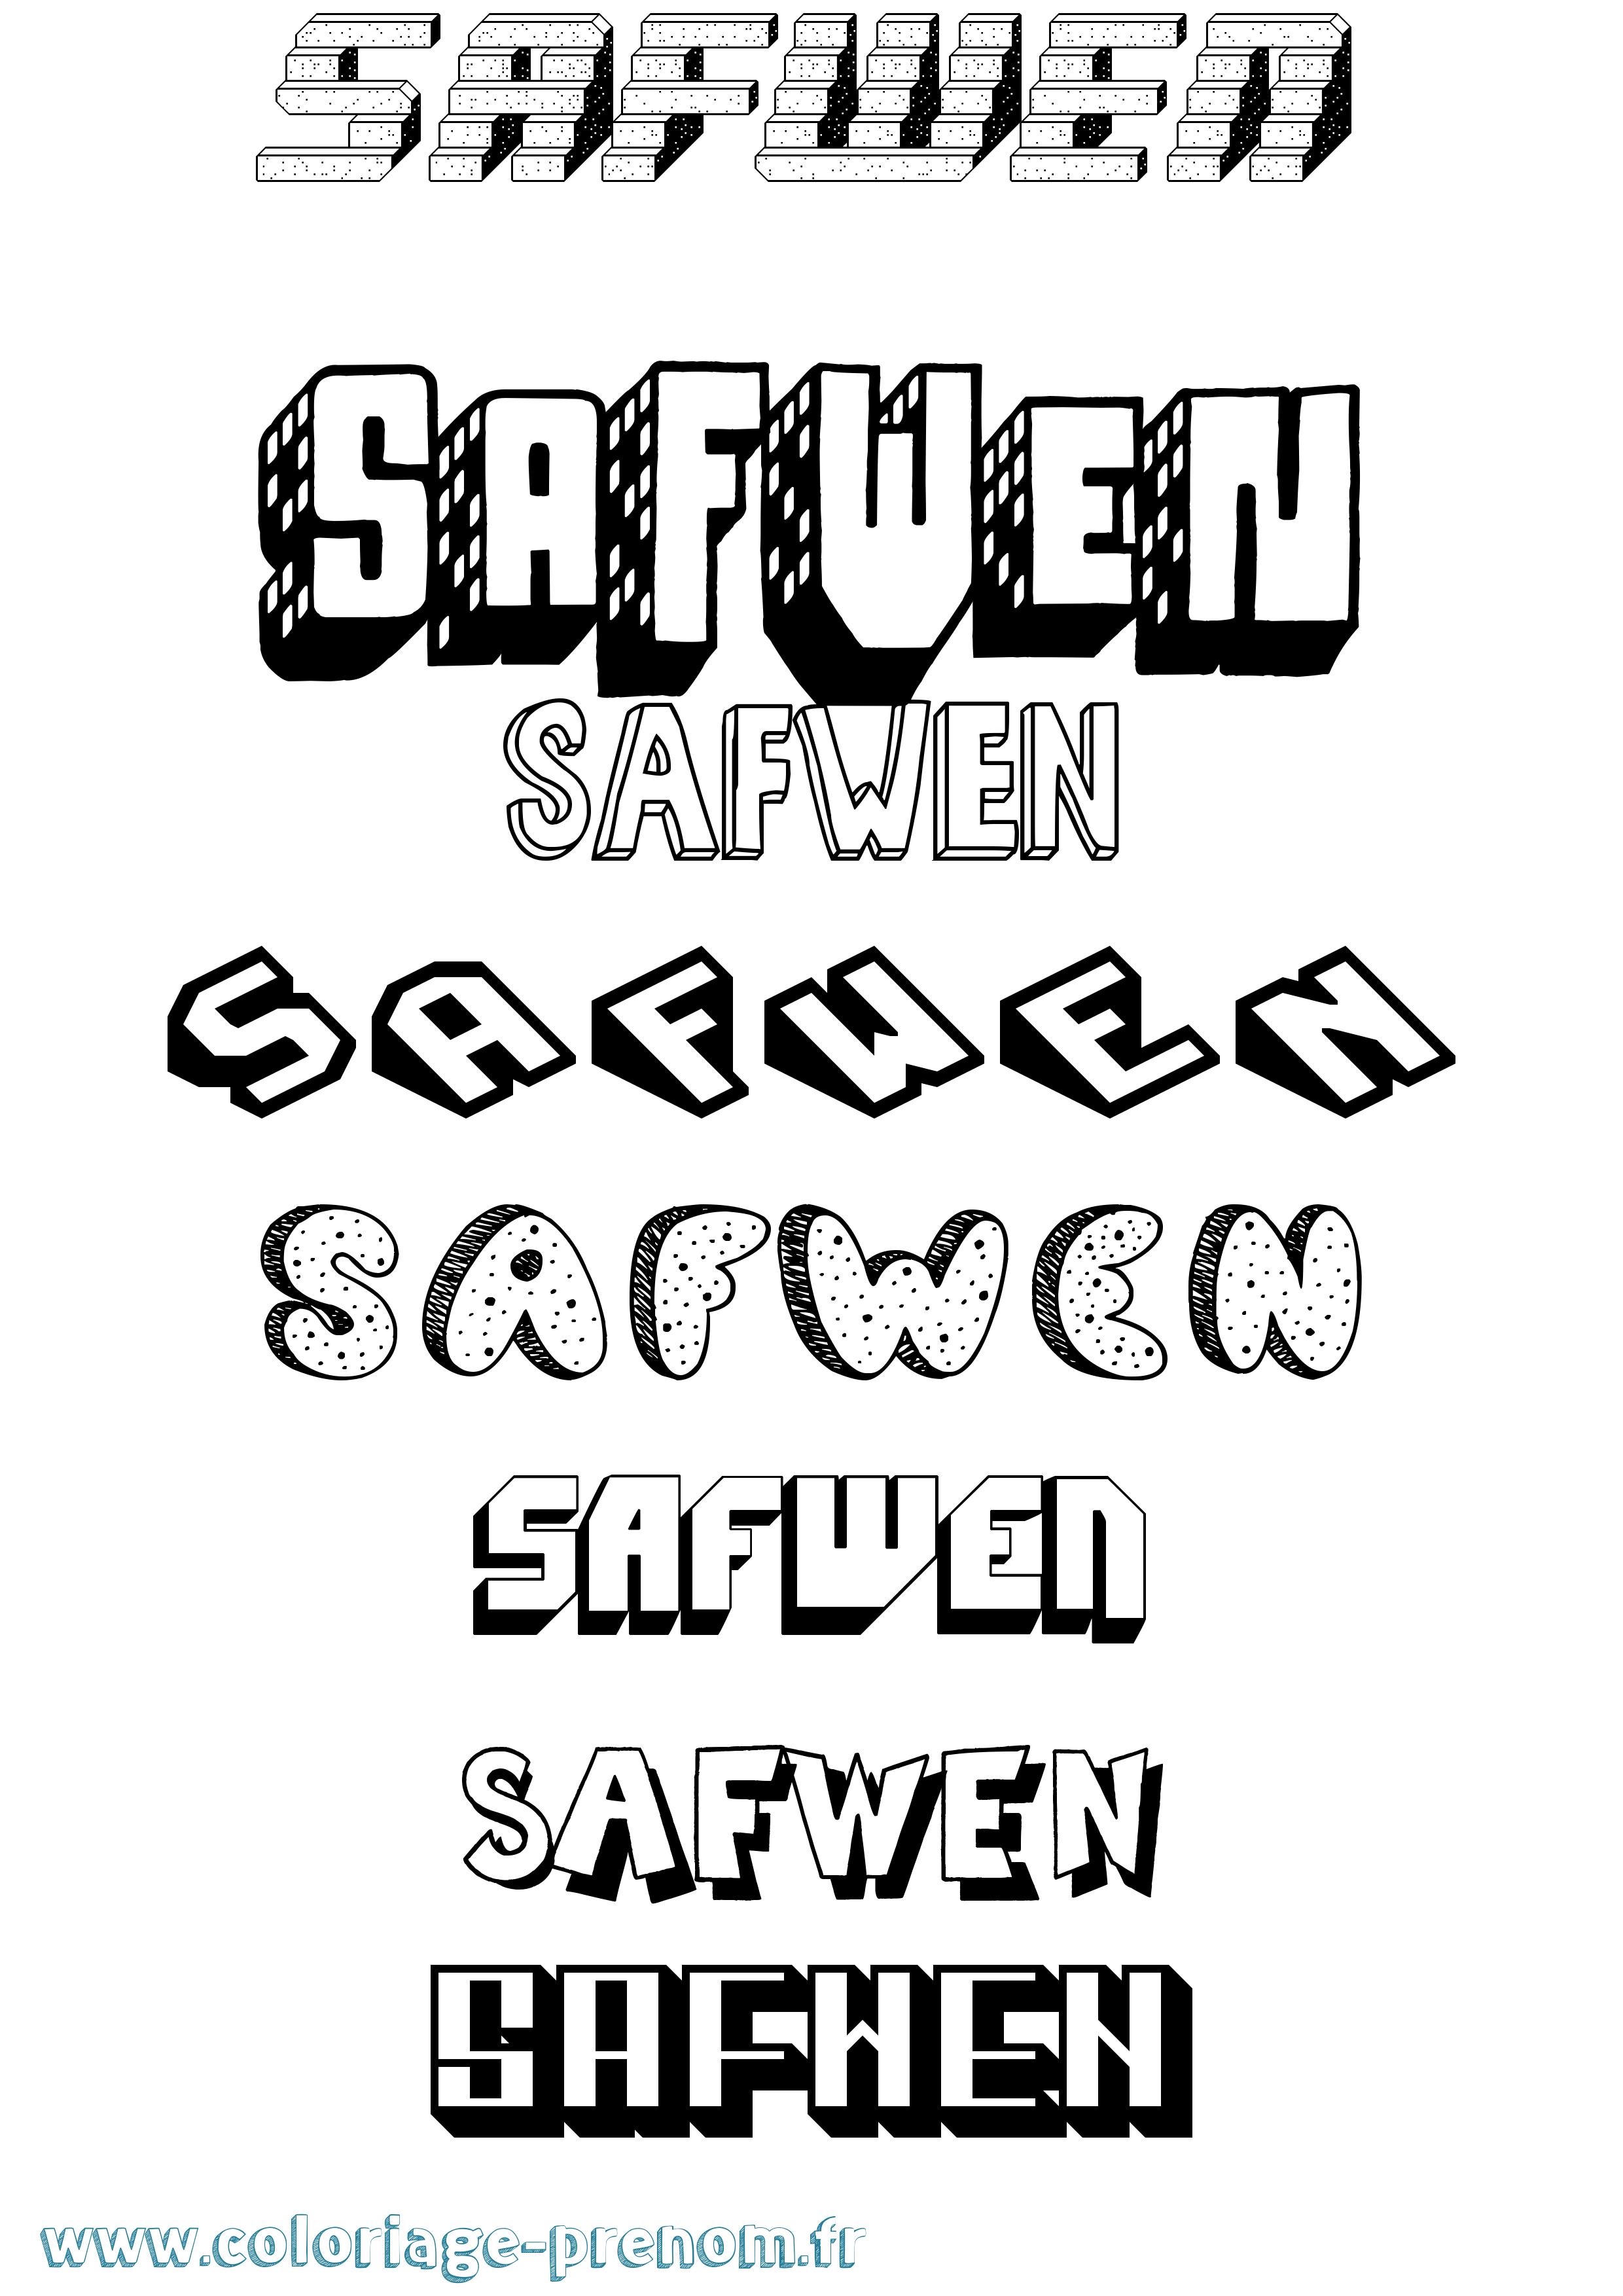 Coloriage prénom Safwen Effet 3D